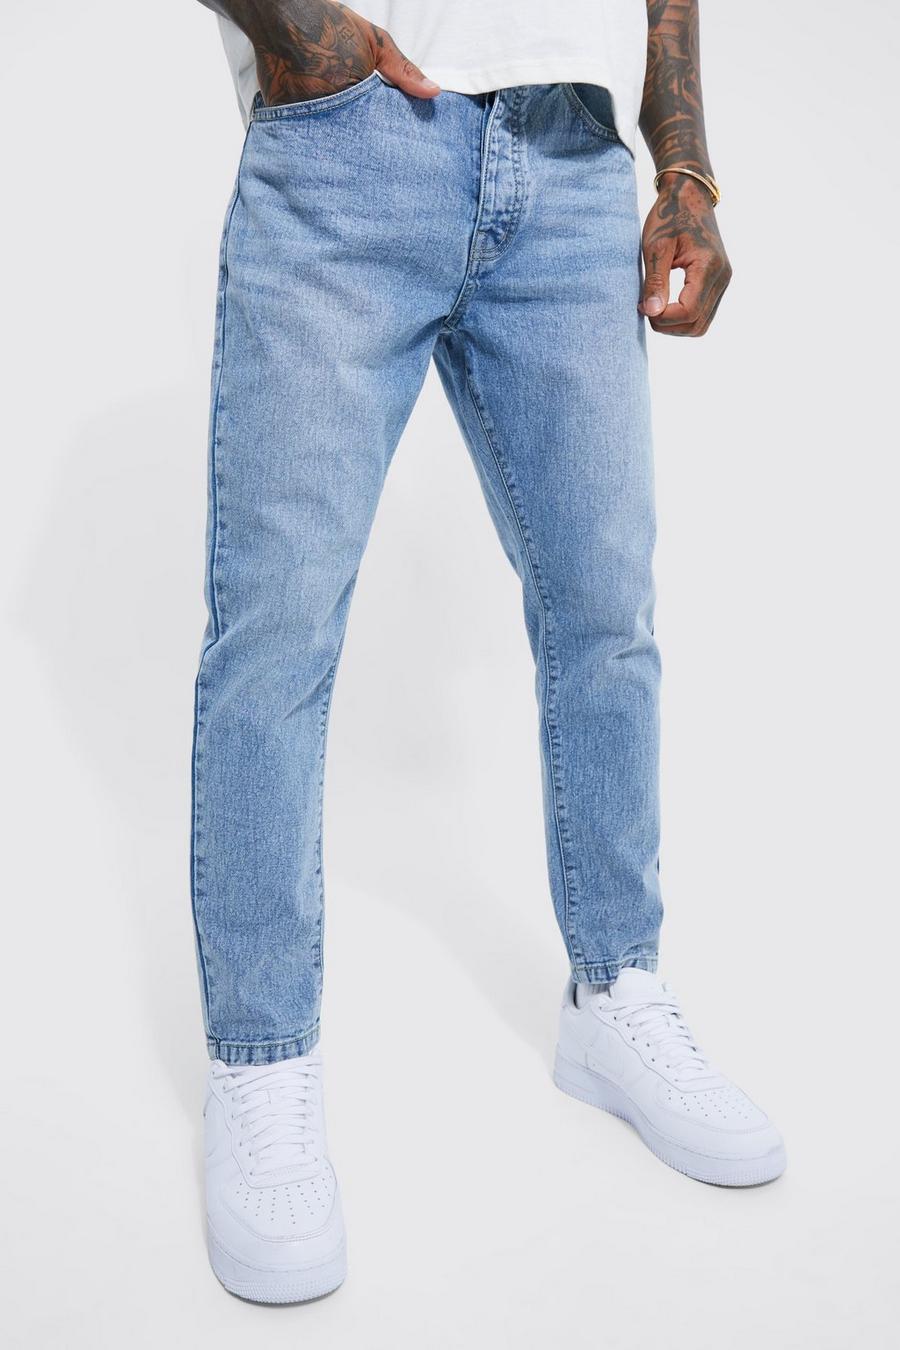 https://media.boohoo.com/i/boohoo/bmm41418_light%20blue_xl/male-light%20blue-tapered-fit-jeans/?w=900&qlt=default&fmt.jp2.qlt=70&fmt=auto&sm=fit